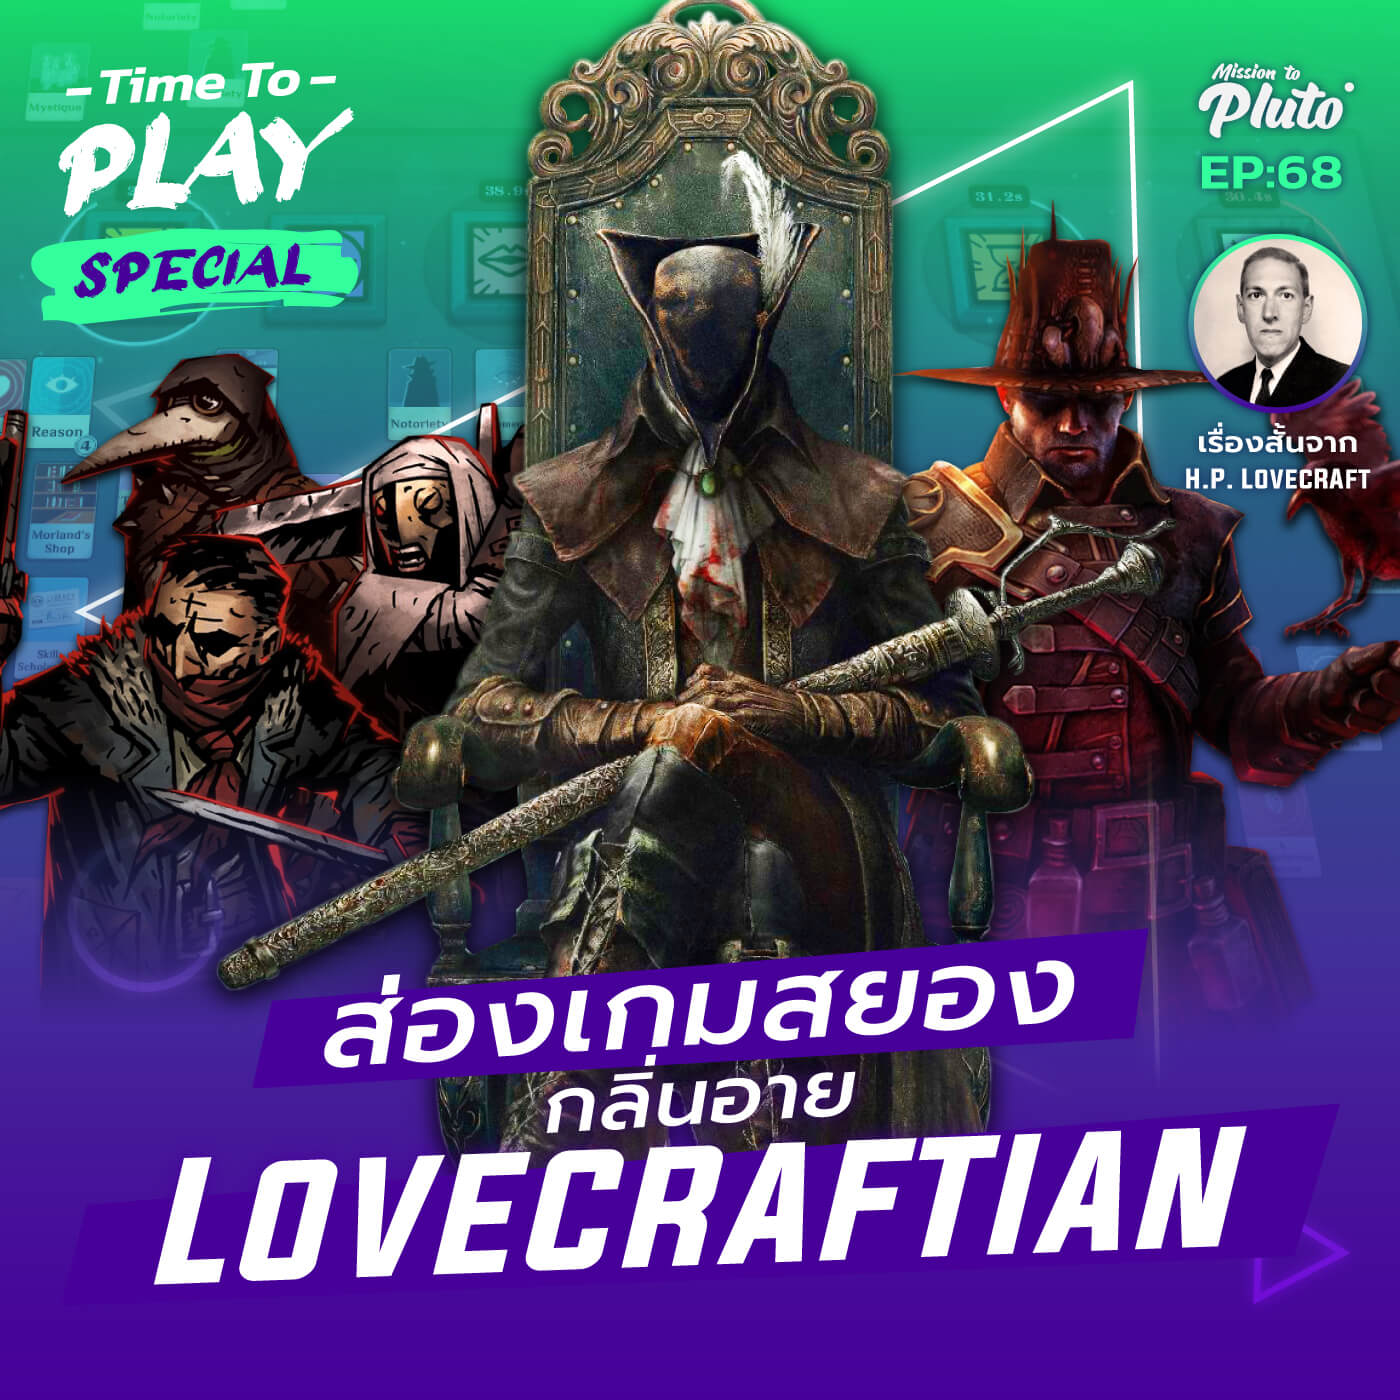 ส่องเกมสยอง กลิ่นอาย Lovecraftian | Time To Play EP.68 Special